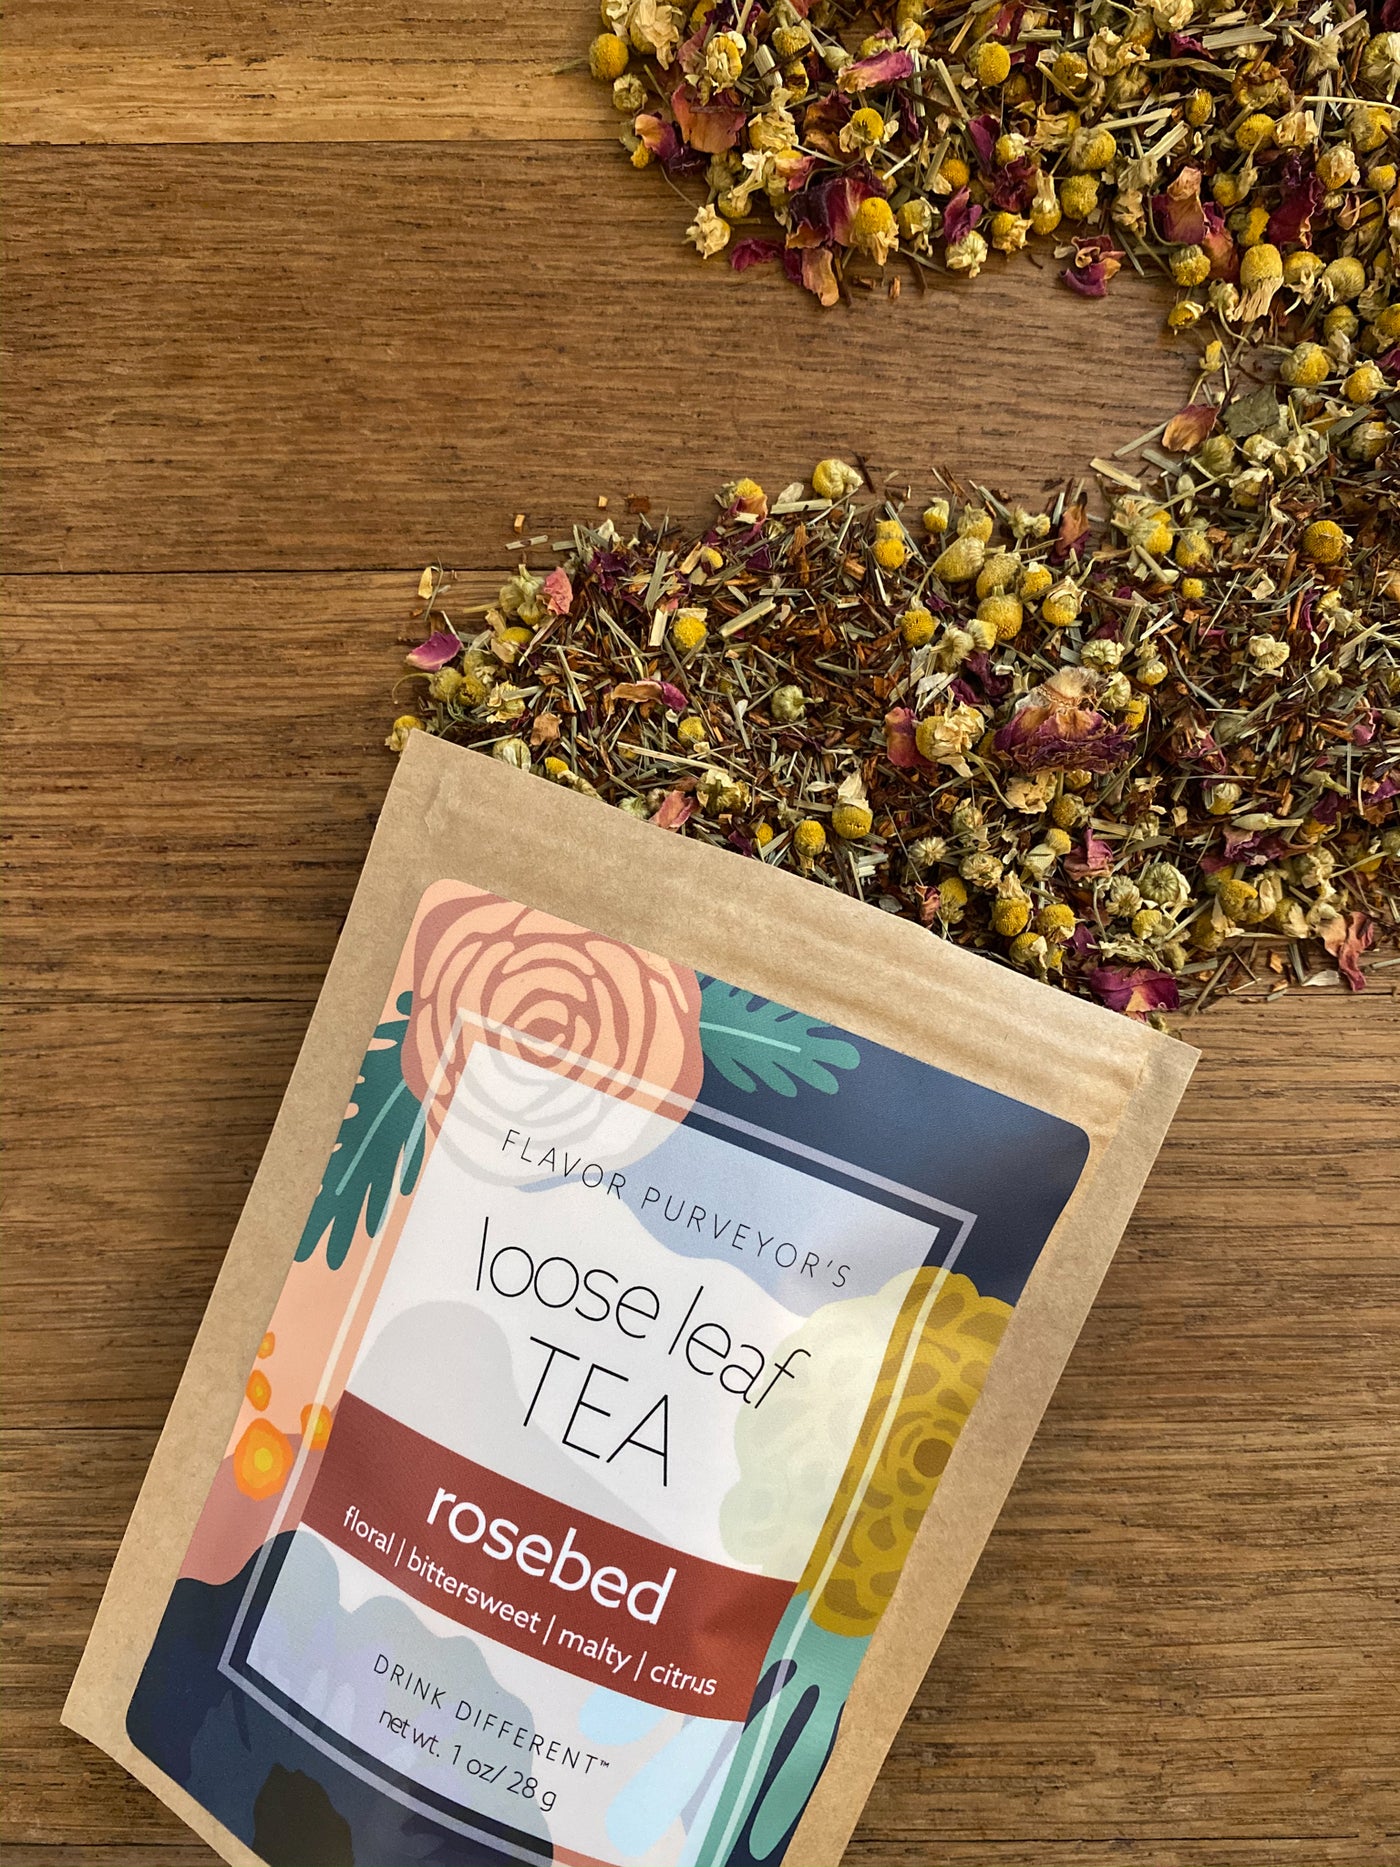 Rosebed Loose Leaf Tea